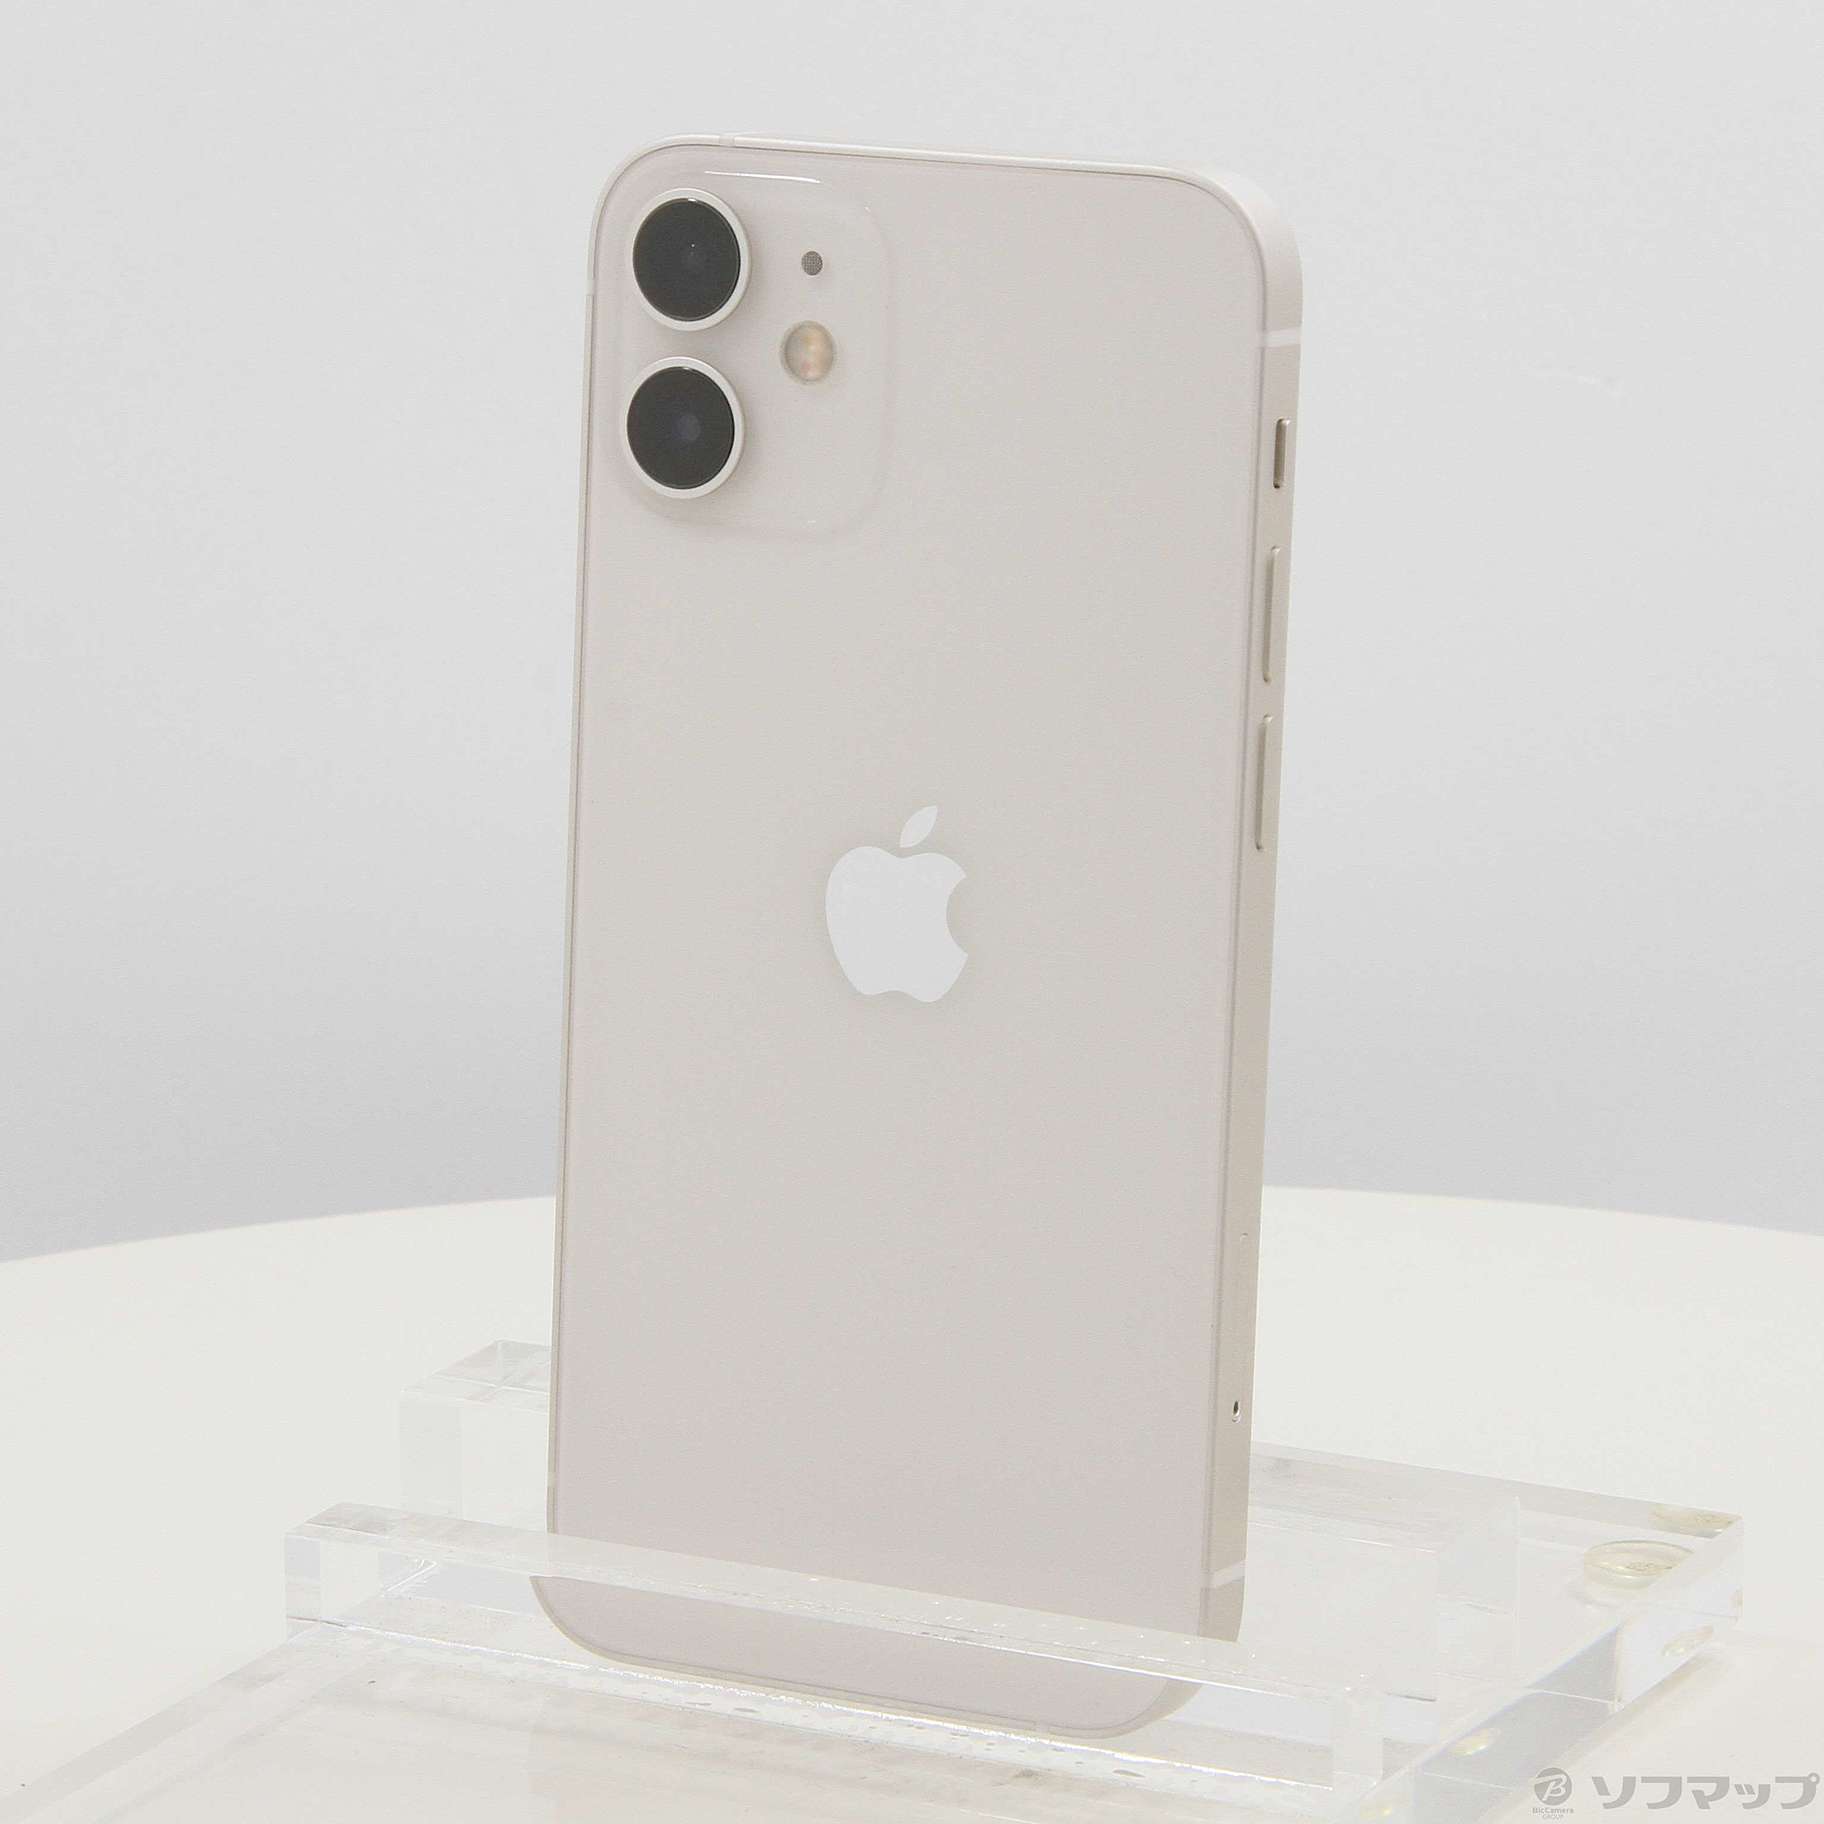 iPhone 12 mini ホワイト 64 GB SIMフリー購入はまだ可能でしょうか